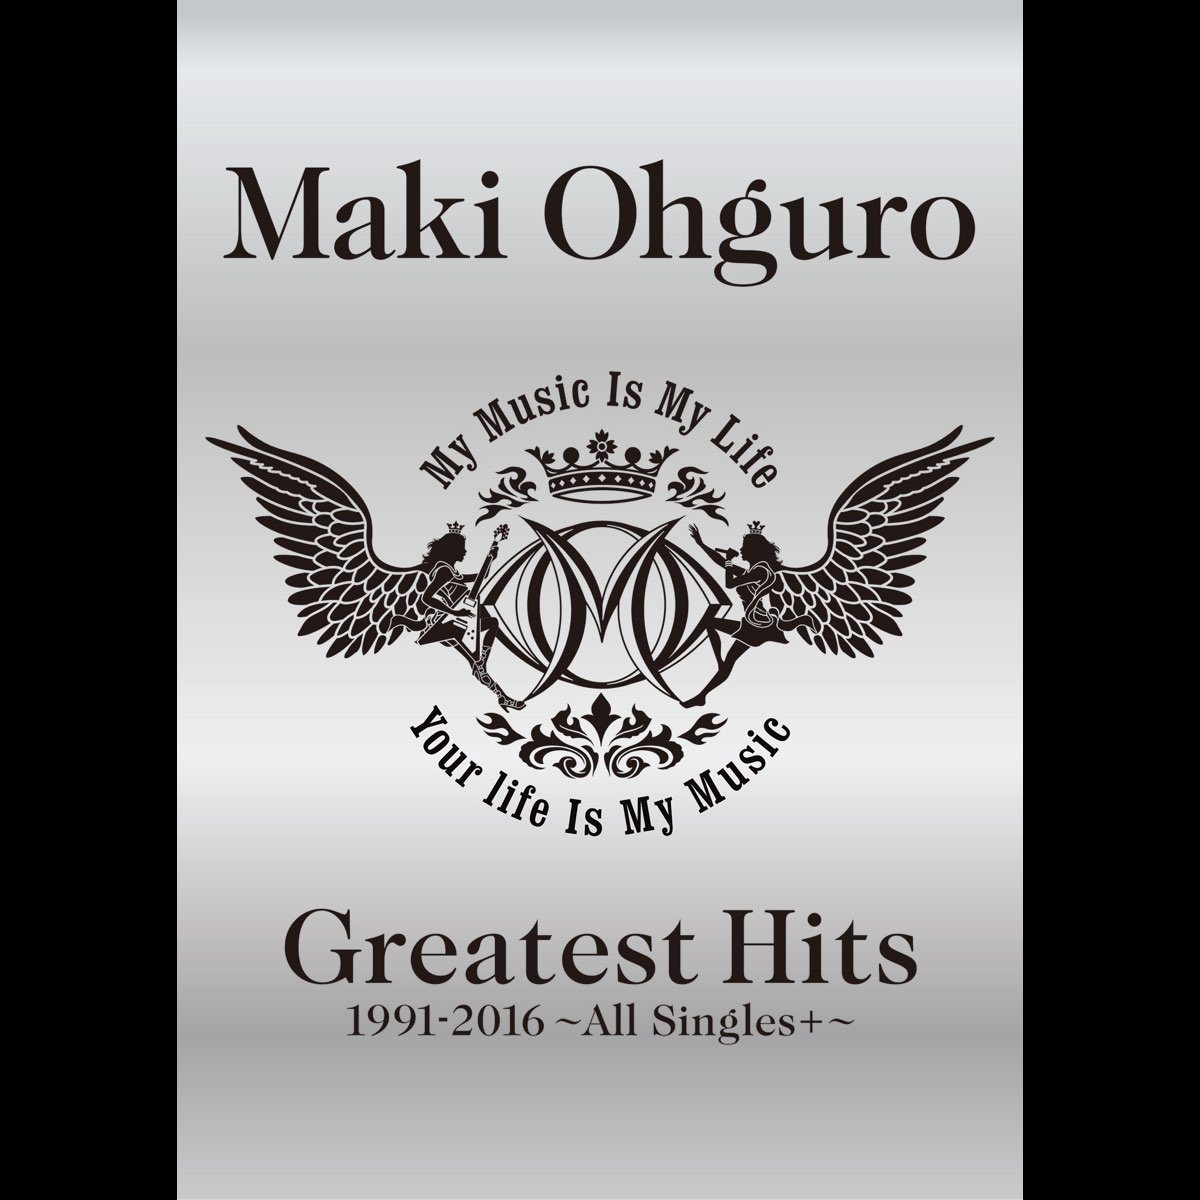 大黒摩季 Greatest Hits 1991-2016 初回限定生産盤BIG盤豪華パッケージ仕様